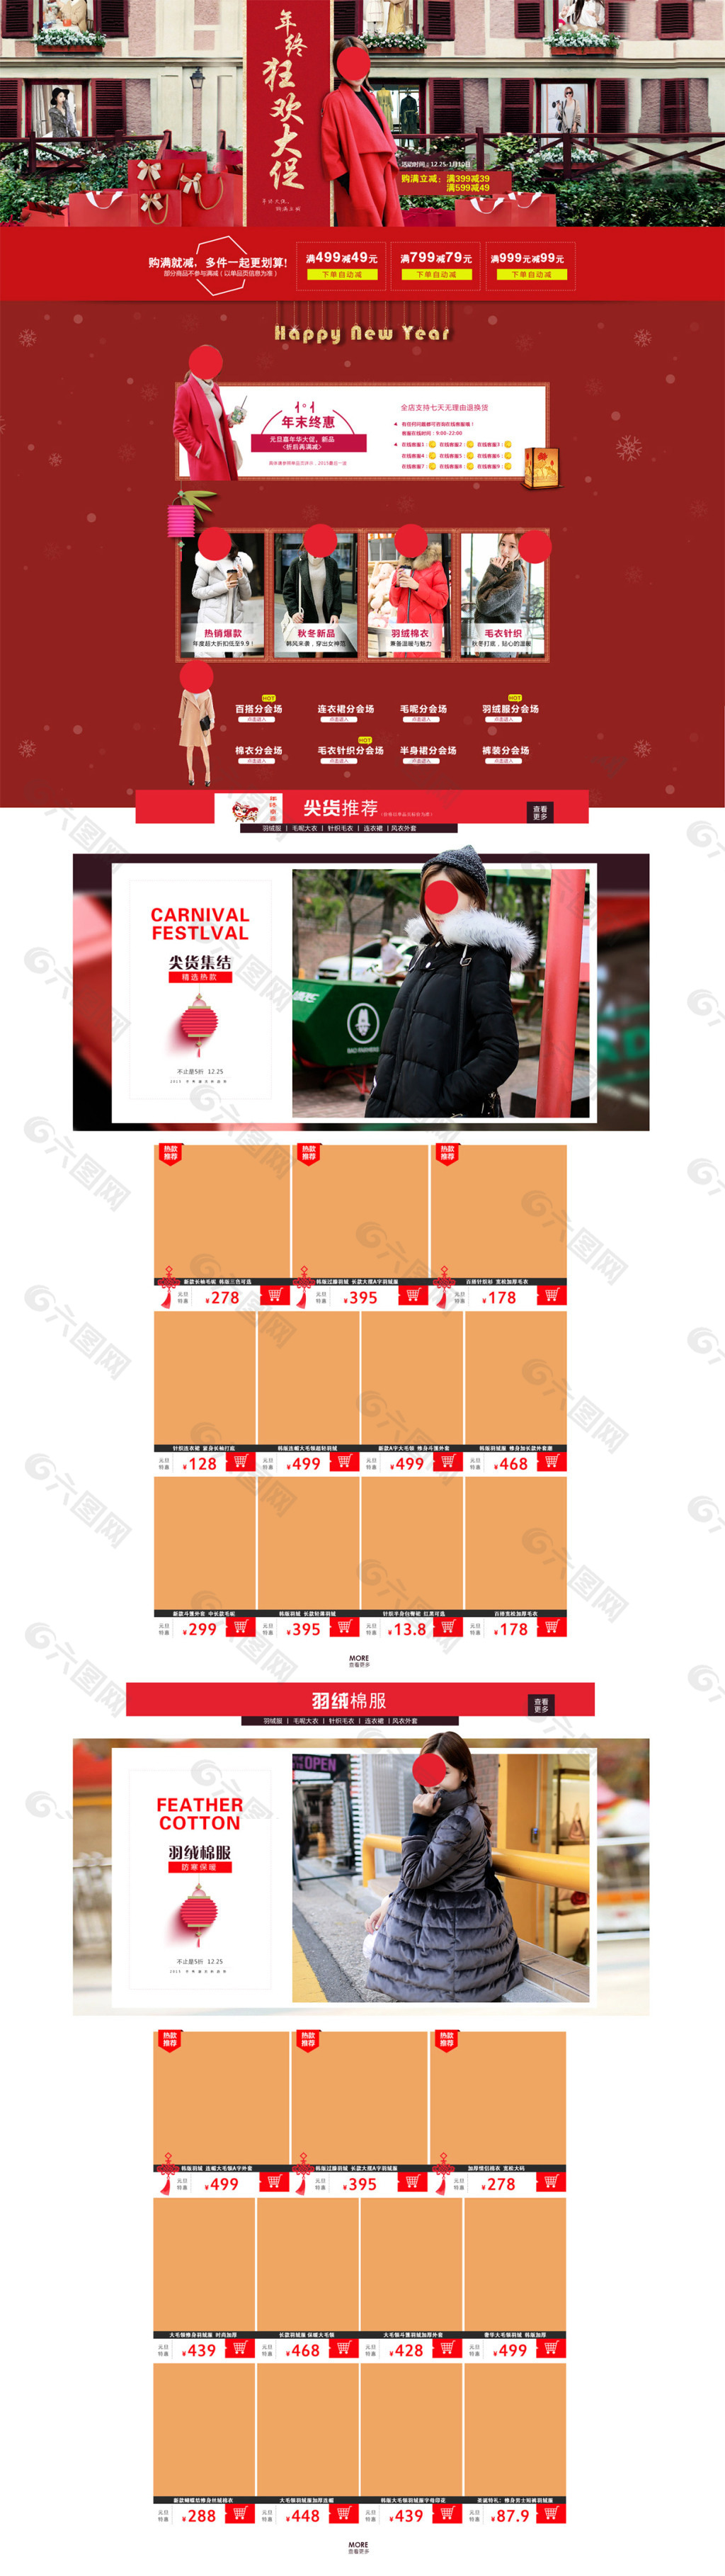 天猫春节购物节中国风首页装修模板